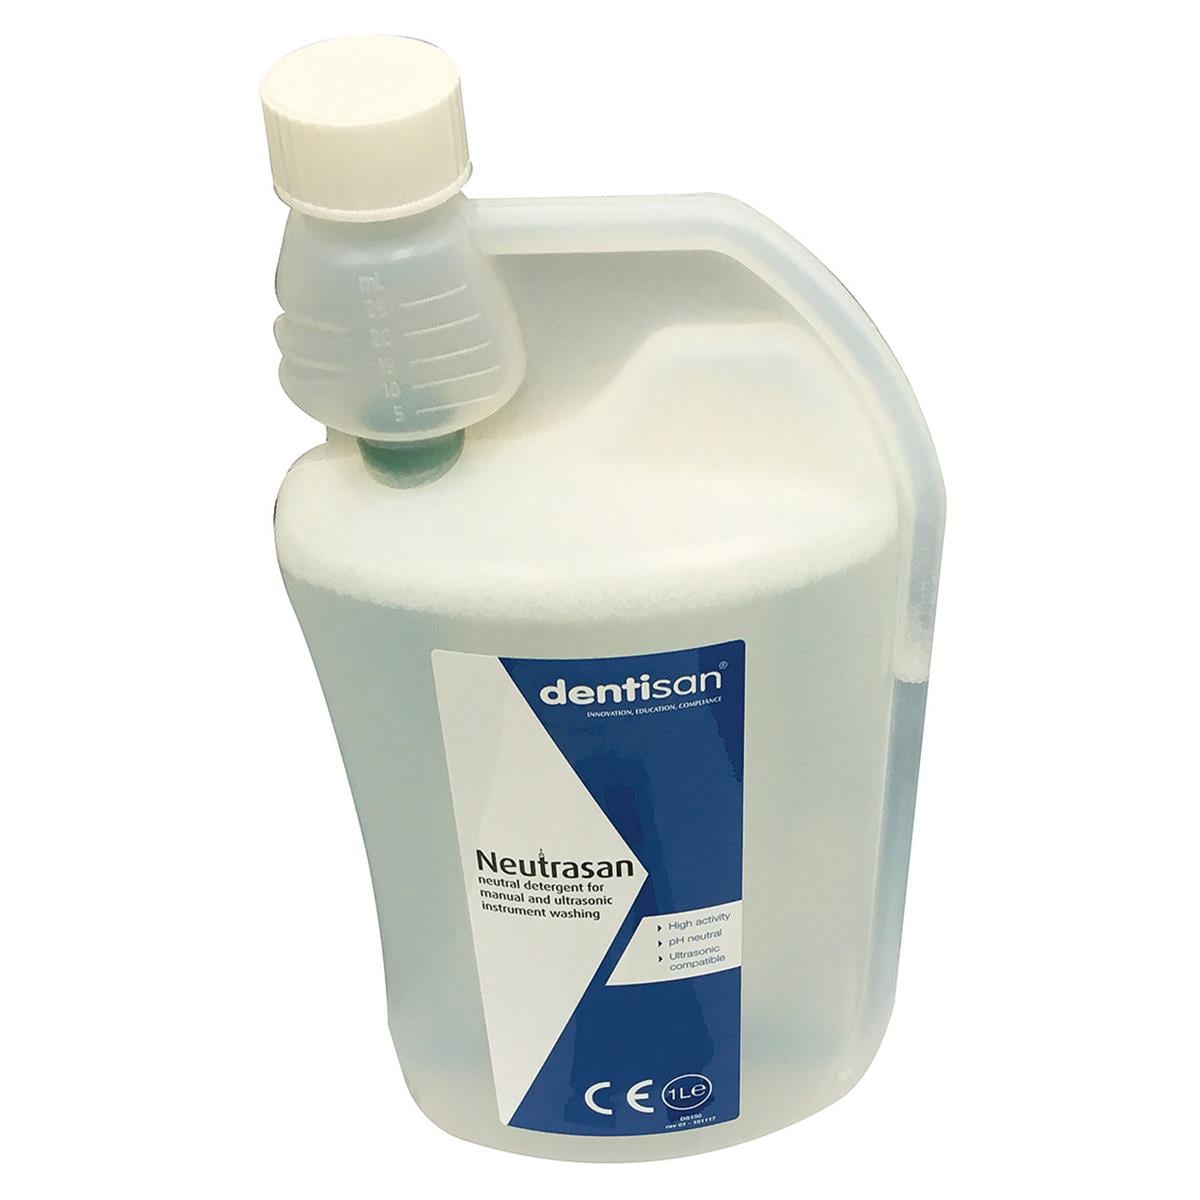 Neutrasan Neutral Detergent Instrument Cleaner 1L